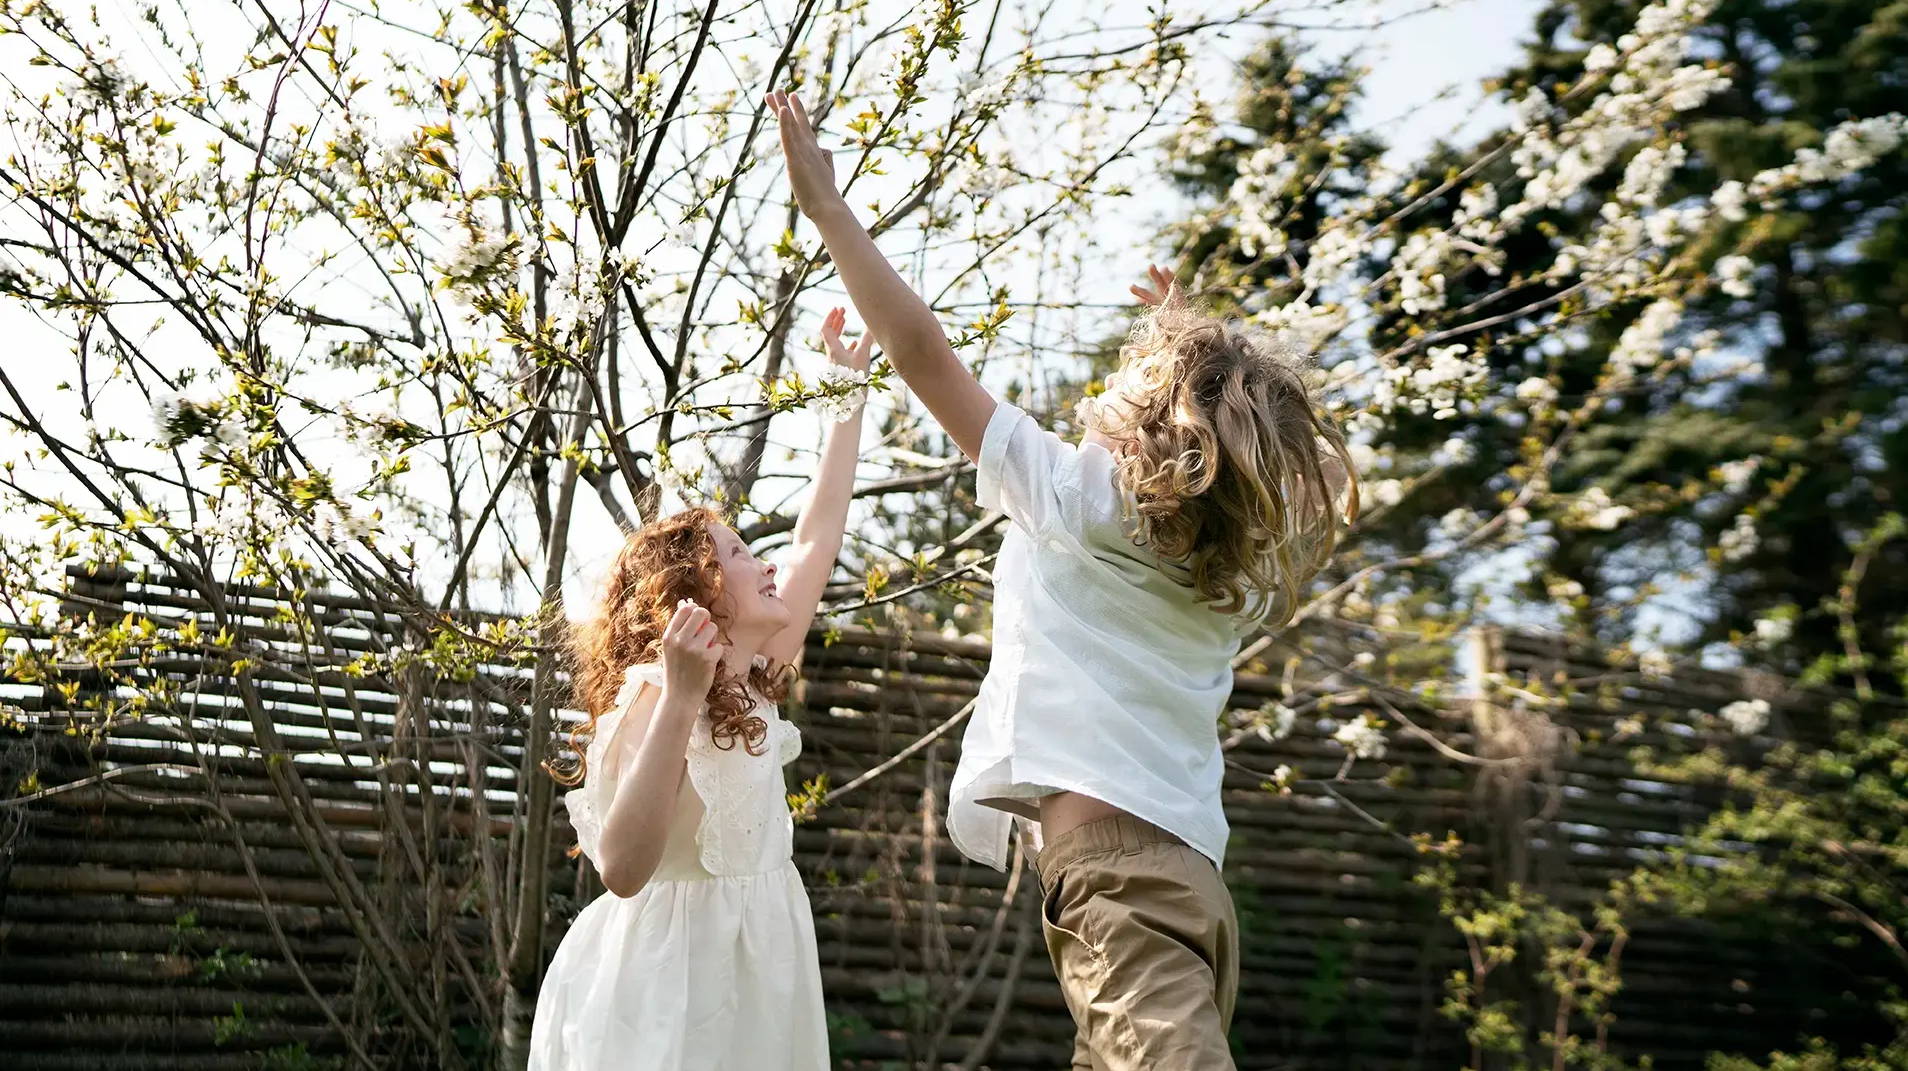  Ein Mädchen und ein Junge spielen zusammen draußen und springen, um die zarten rosa Blüten an den Bäumen zu berühren